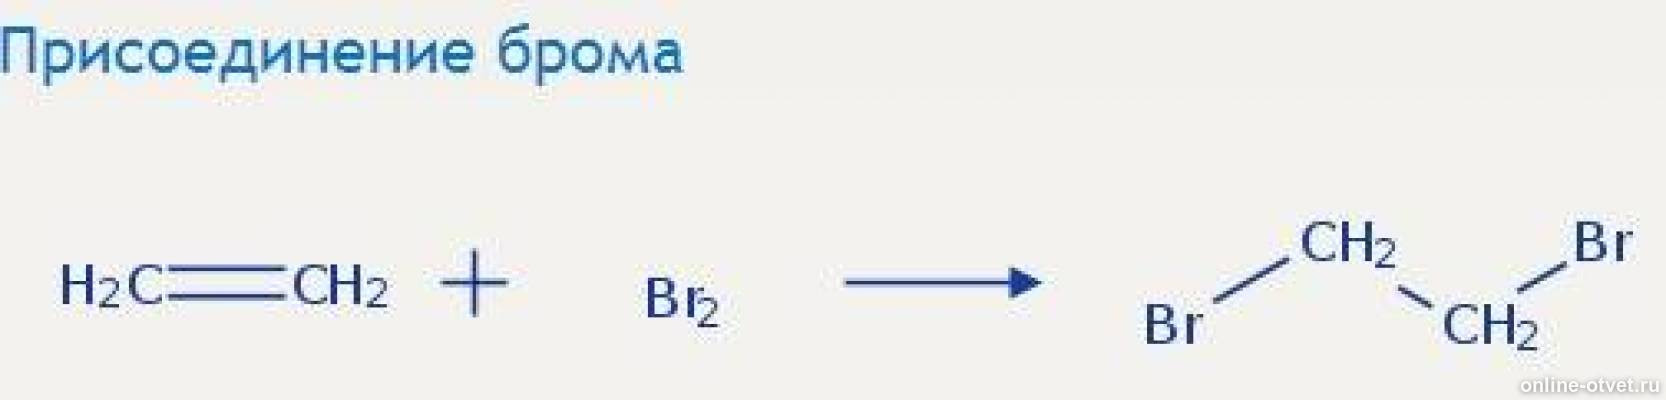 Этанол 1 cuo. Присоединение брома. Этанол+CL. Реакция присоединения брома. C2h4 = диэтиловый эфир.